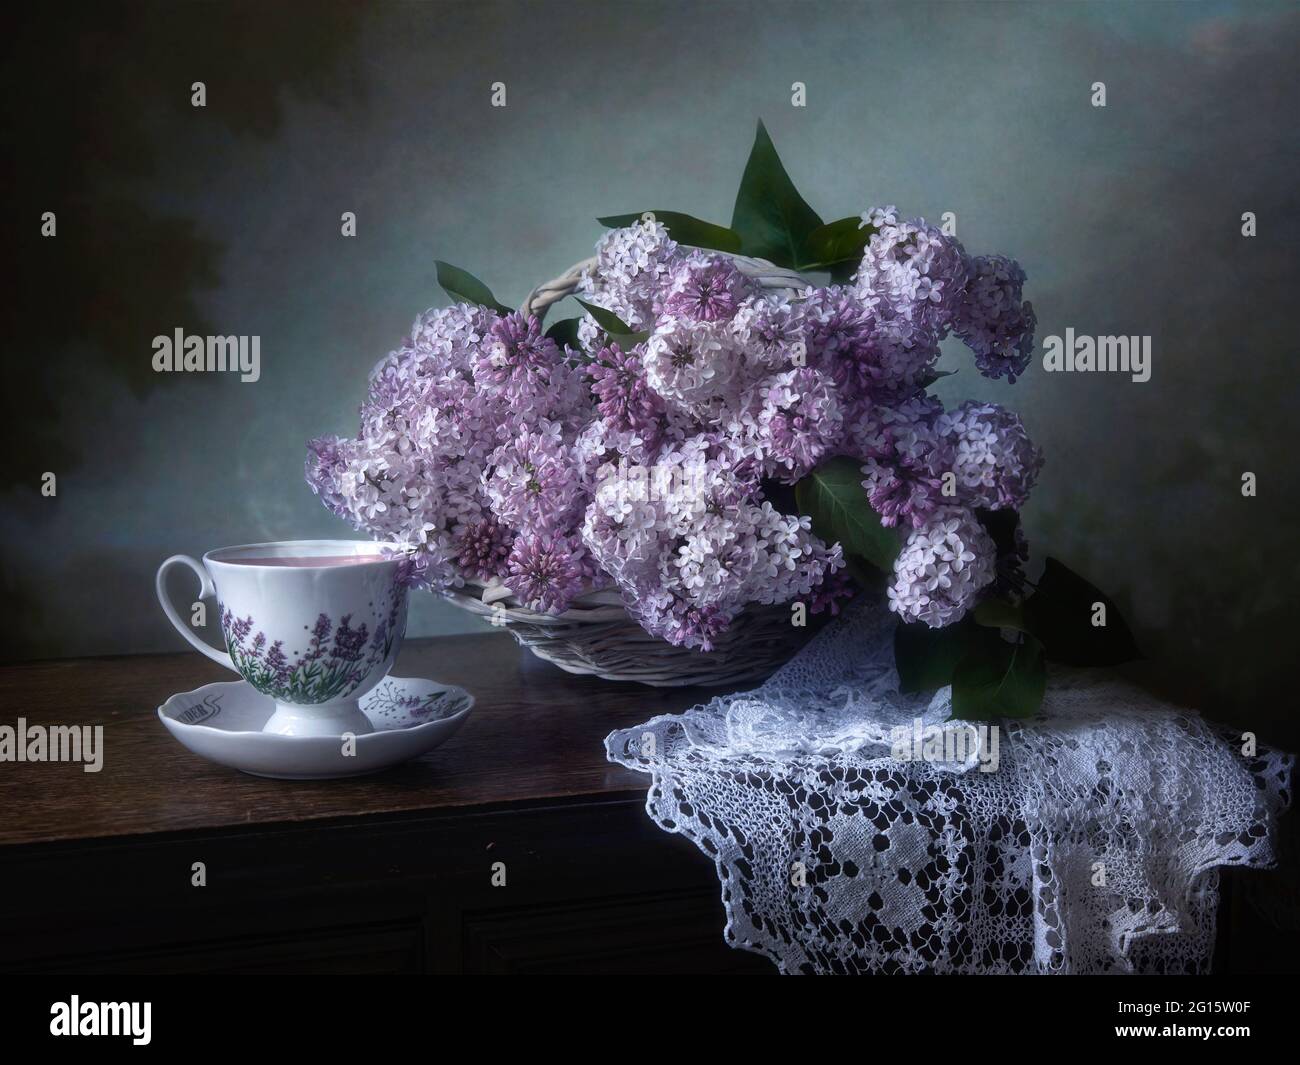 Encore la vie avec beau bouquet de fleurs sur une table de thé Banque D'Images